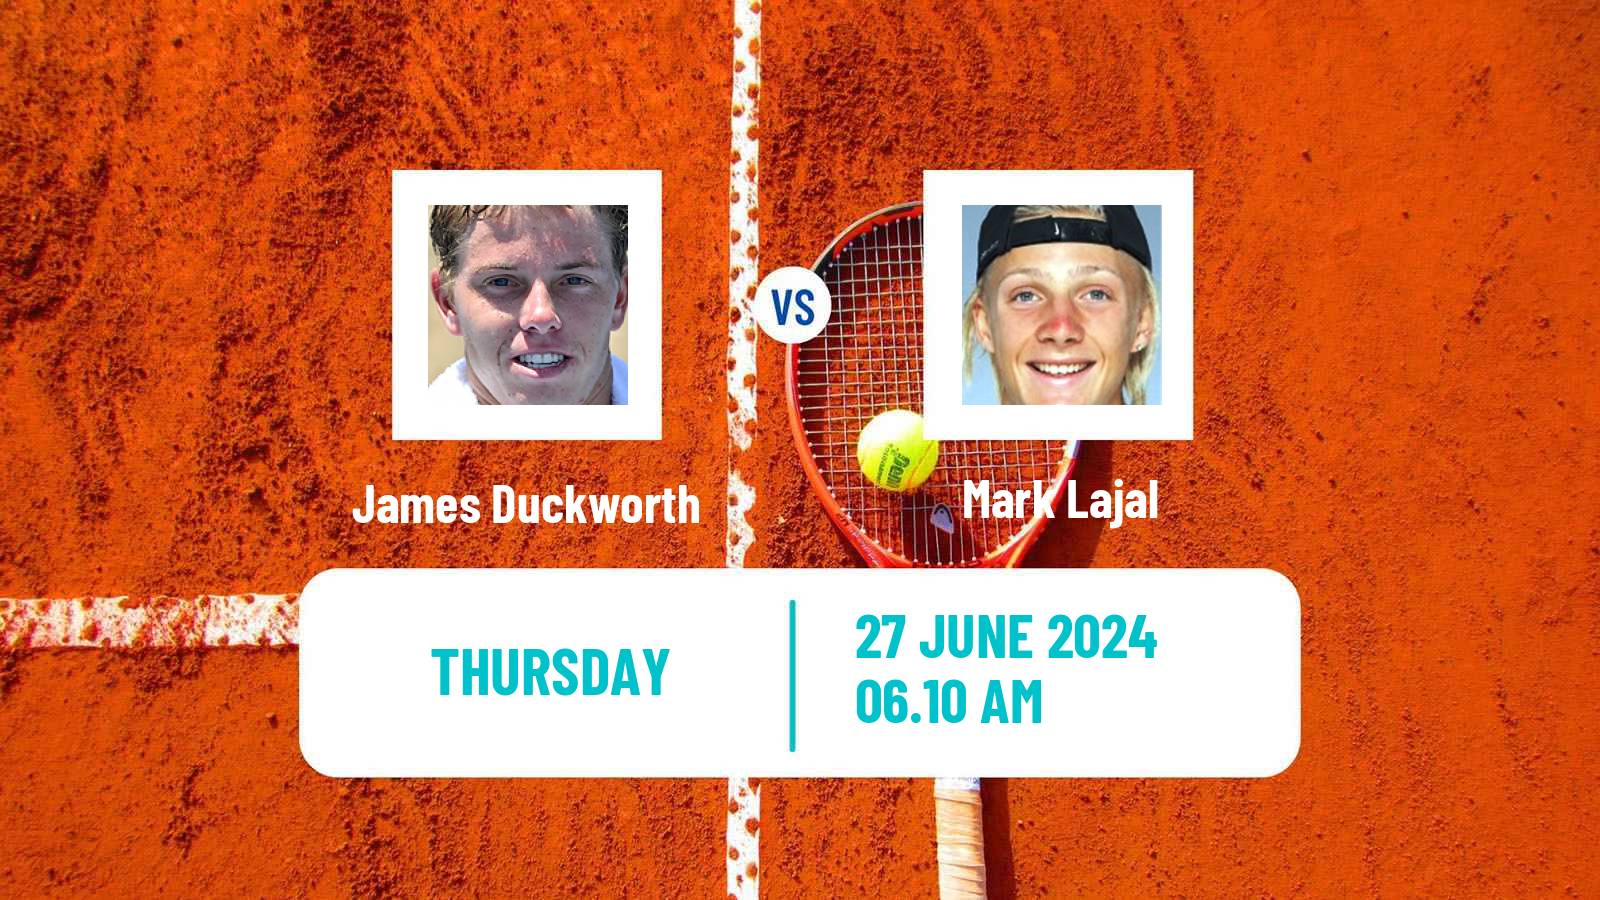 Tennis ATP Wimbledon James Duckworth - Mark Lajal